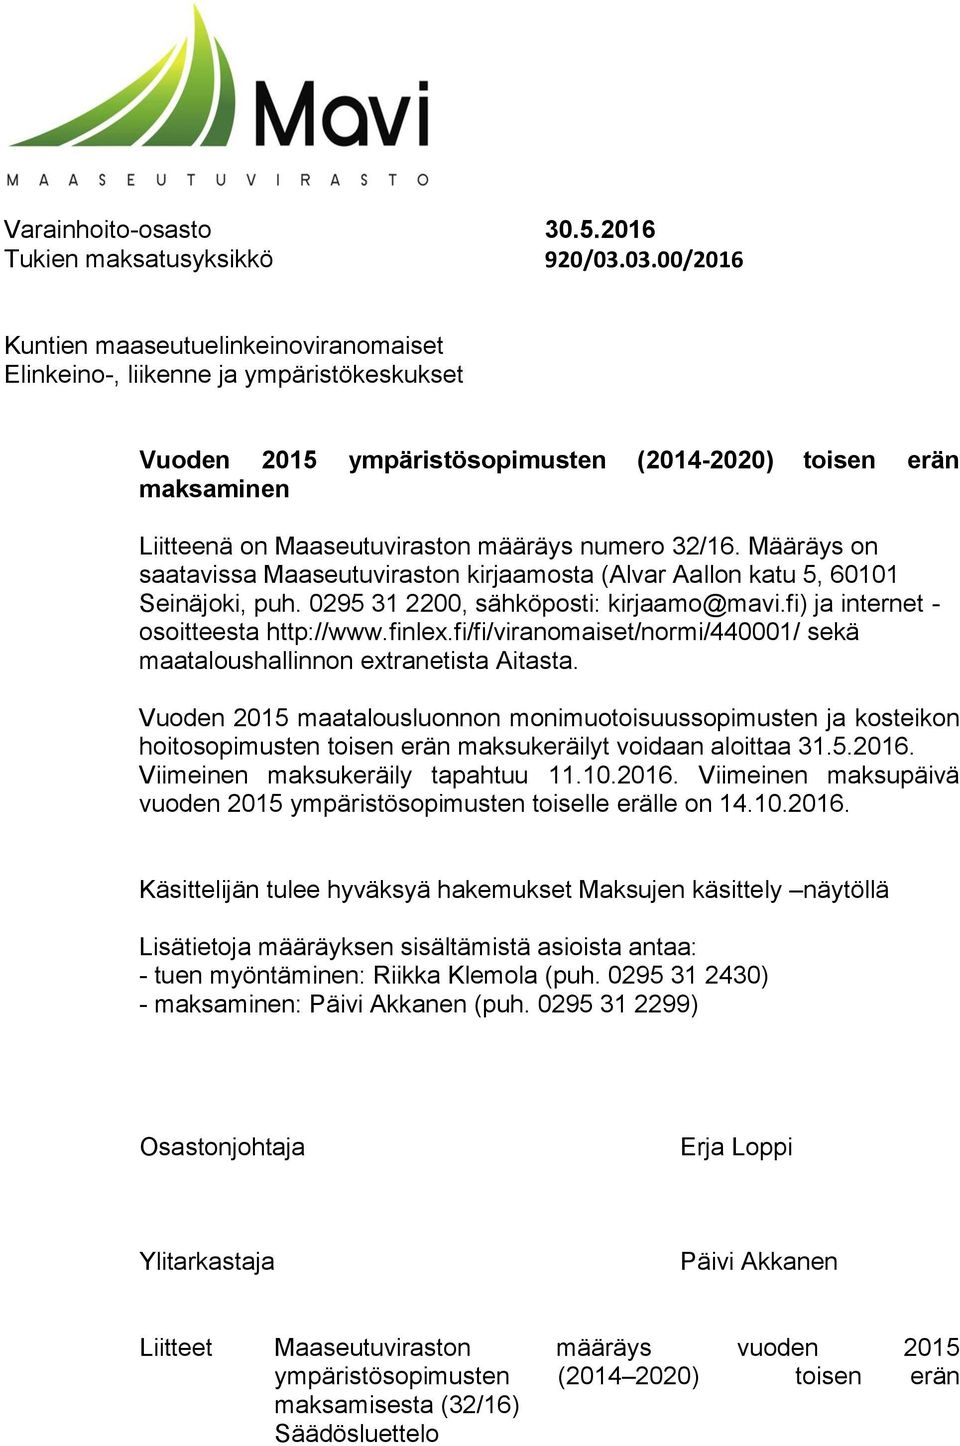 numero 32/16. Määräys on saatavissa Maaseutuviraston kirjaamosta (Alvar Aallon katu 5, 60101 Seinäjoki, puh. 0295 31 2200, sähköposti: kirjaamo@mavi.fi) ja internet - osoitteesta http://www.finlex.